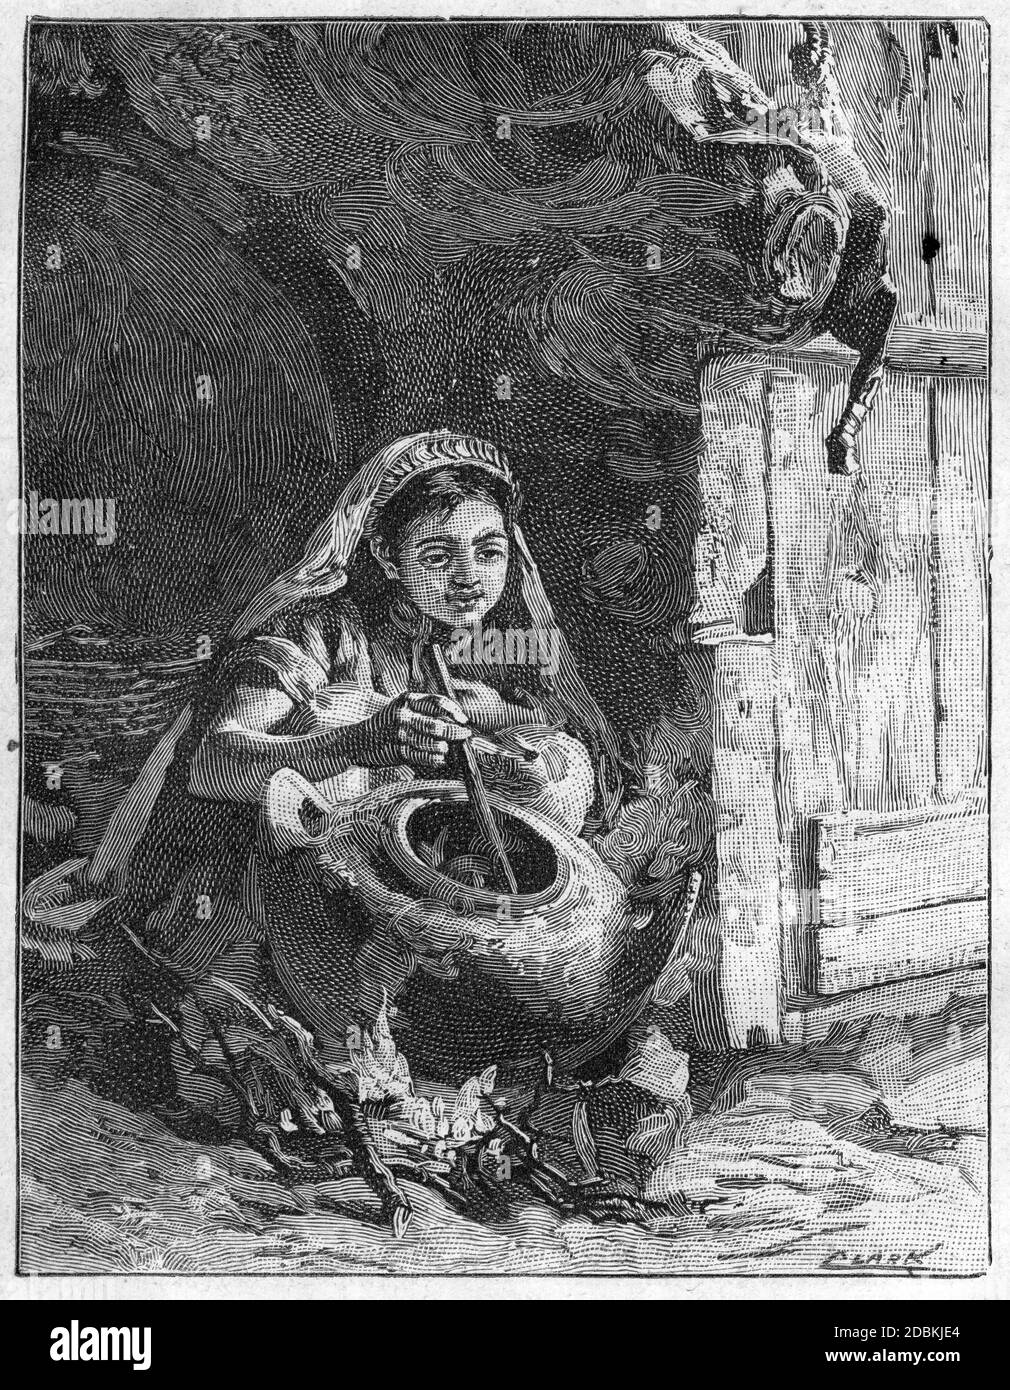 Gravure d'une femme remuant un pot ou un chou-fleur Banque D'Images